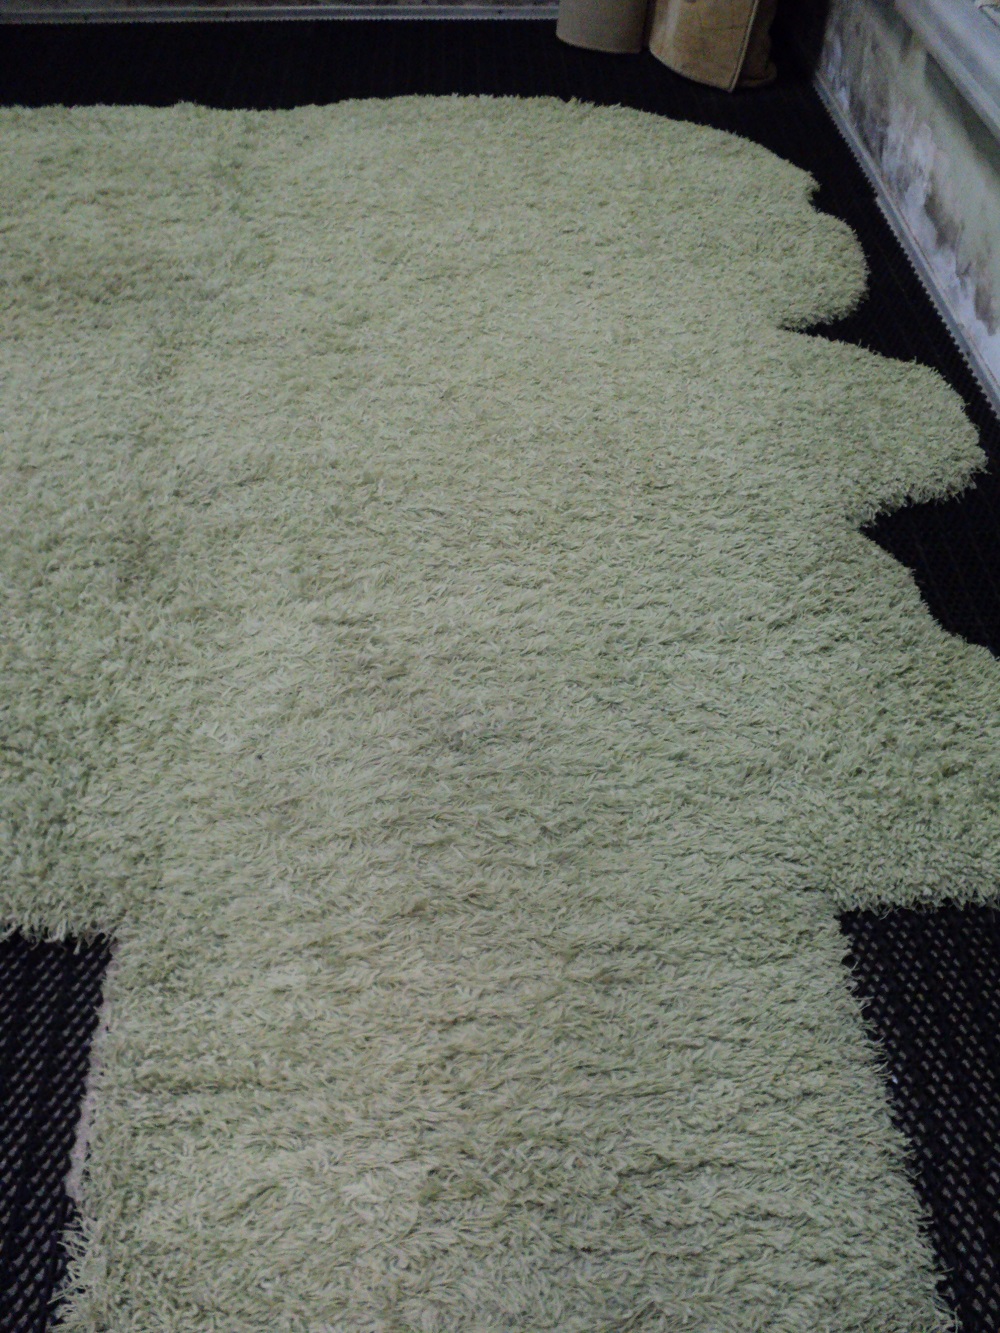 Чистка ковро - Длинноворсный синтетический ковер на клееной основе до чистки